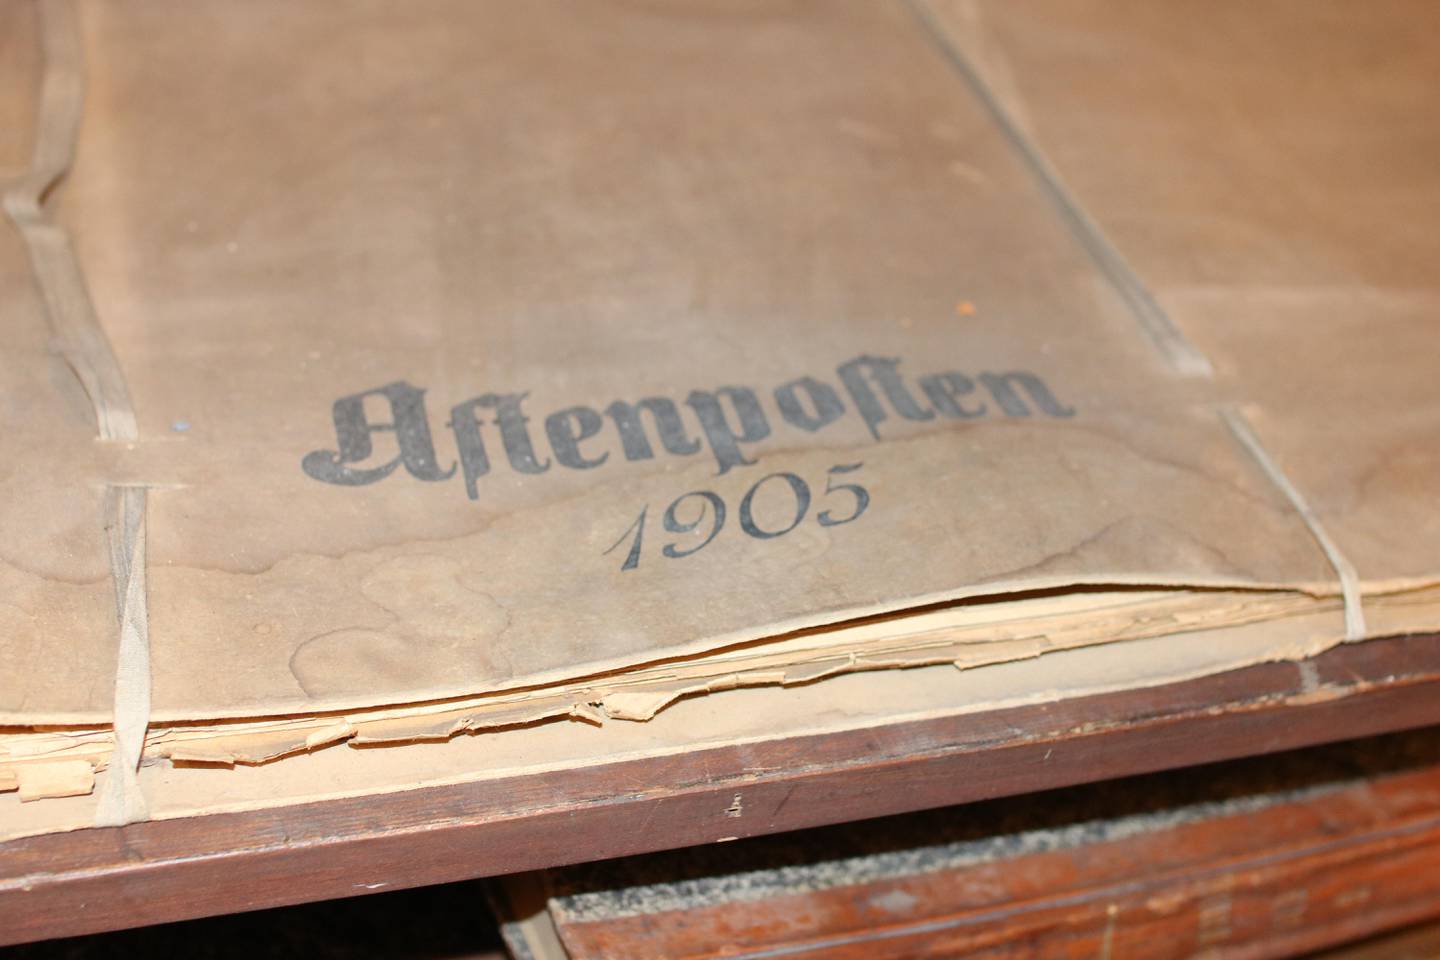 Aftenpostens spesialutgave om Unionsoppløsningen i 1905.